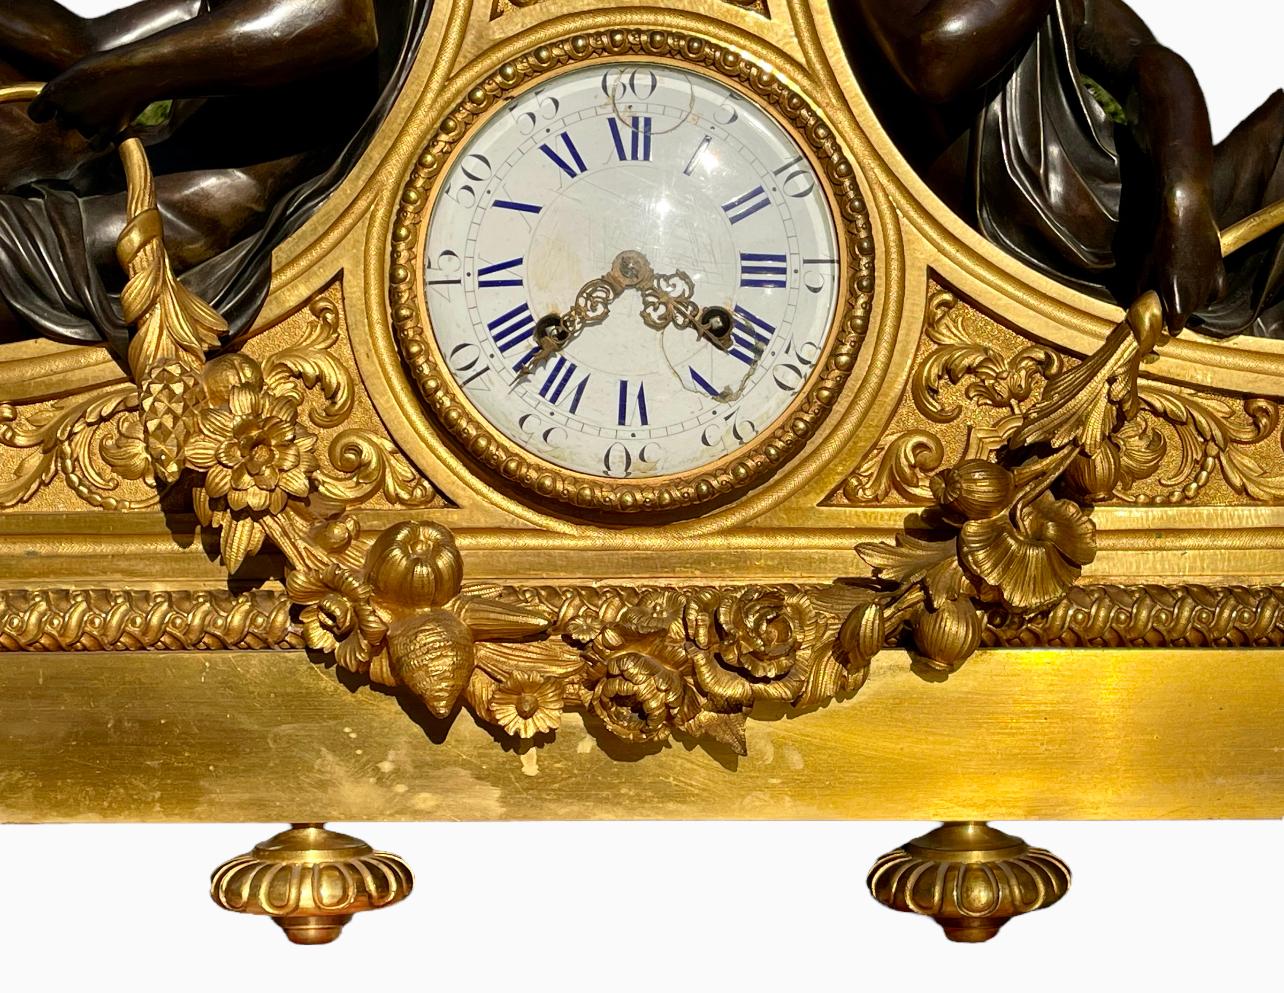 Grande horloge en bronze doré et patiné d'époque Napoléon III datant du 19e siècle. Cette horloge est de très grande qualité, complète et en très bon état.

Dimensions
Hauteur 60cm
Largeur 80cm
Profondeur 18cm